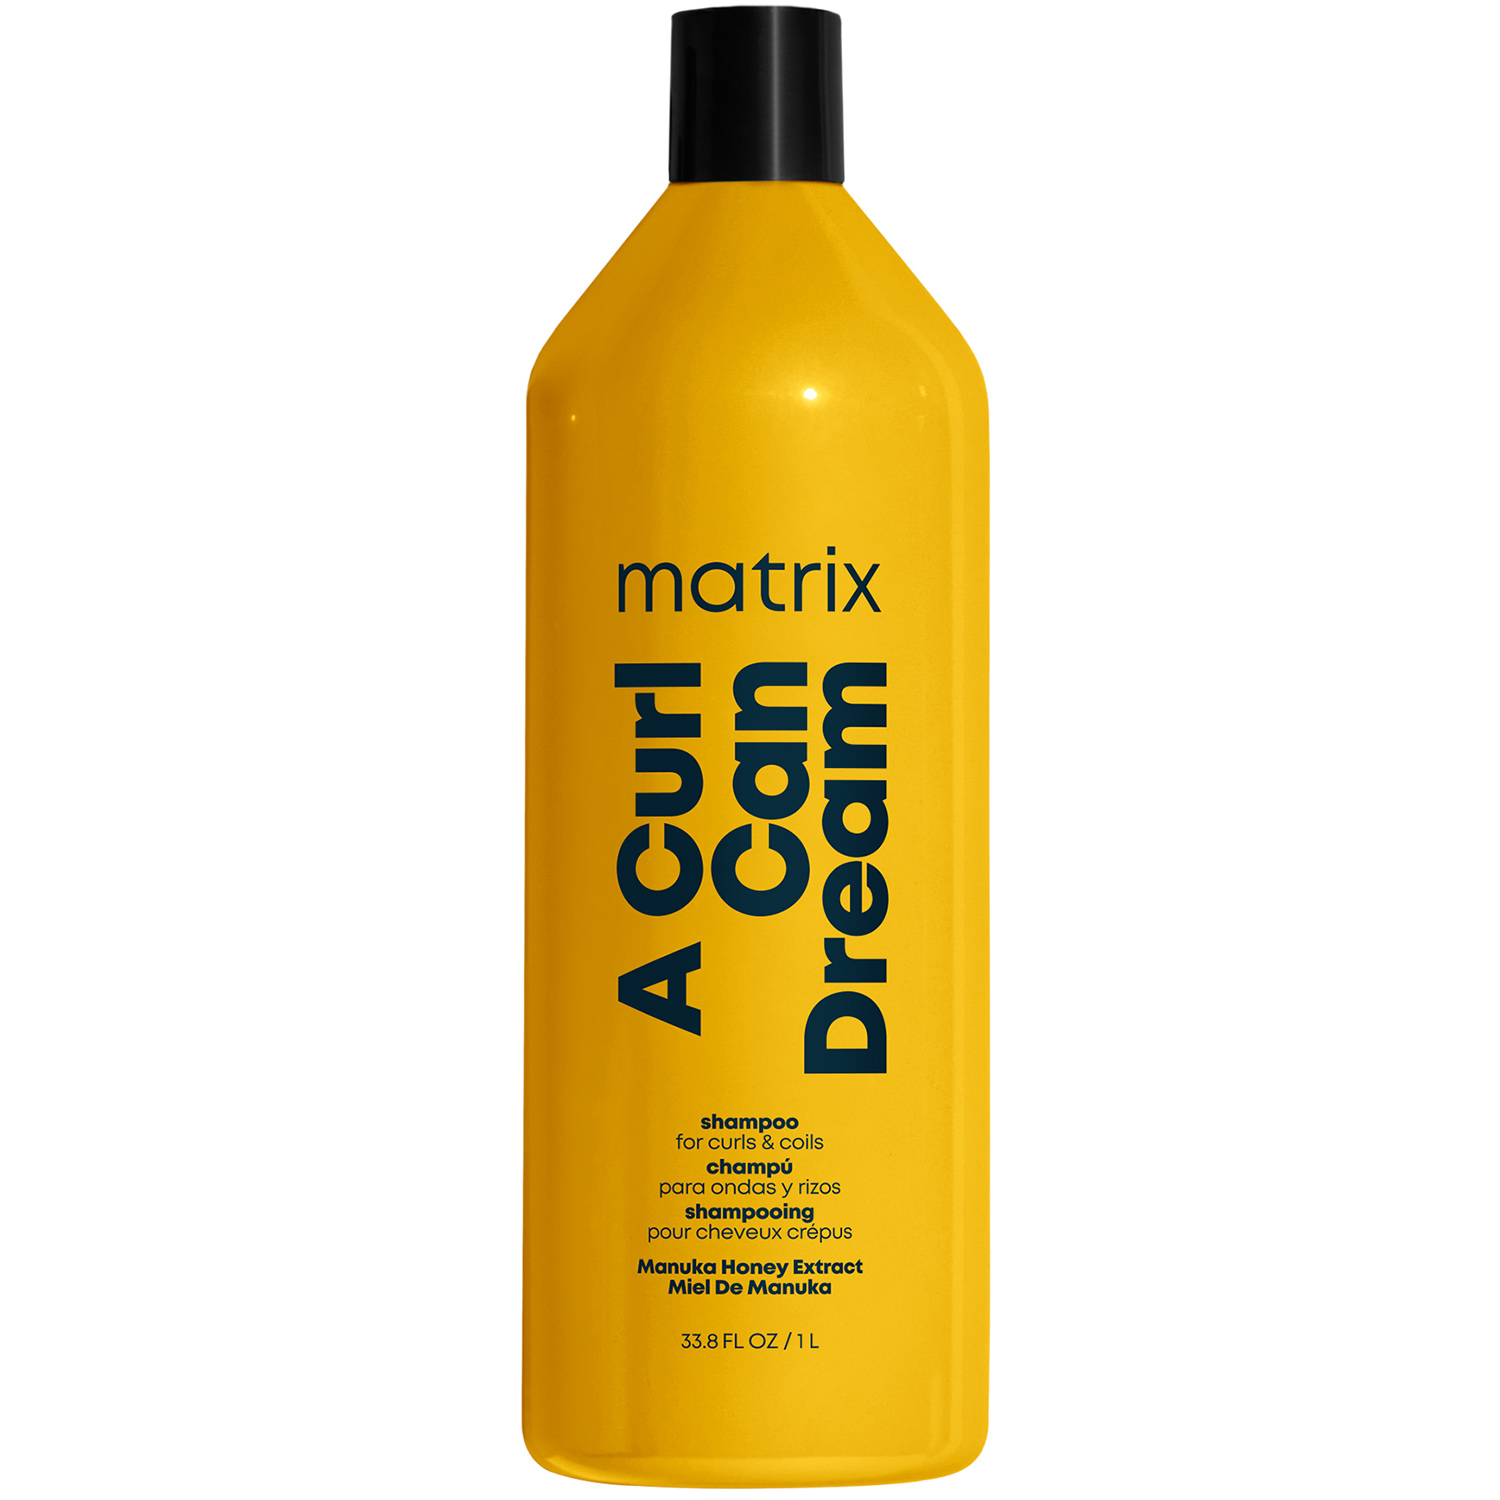 Matrix Шампунь с медом манука для кудрявых и вьющихся волос, 1000 мл (Matrix, Total results)